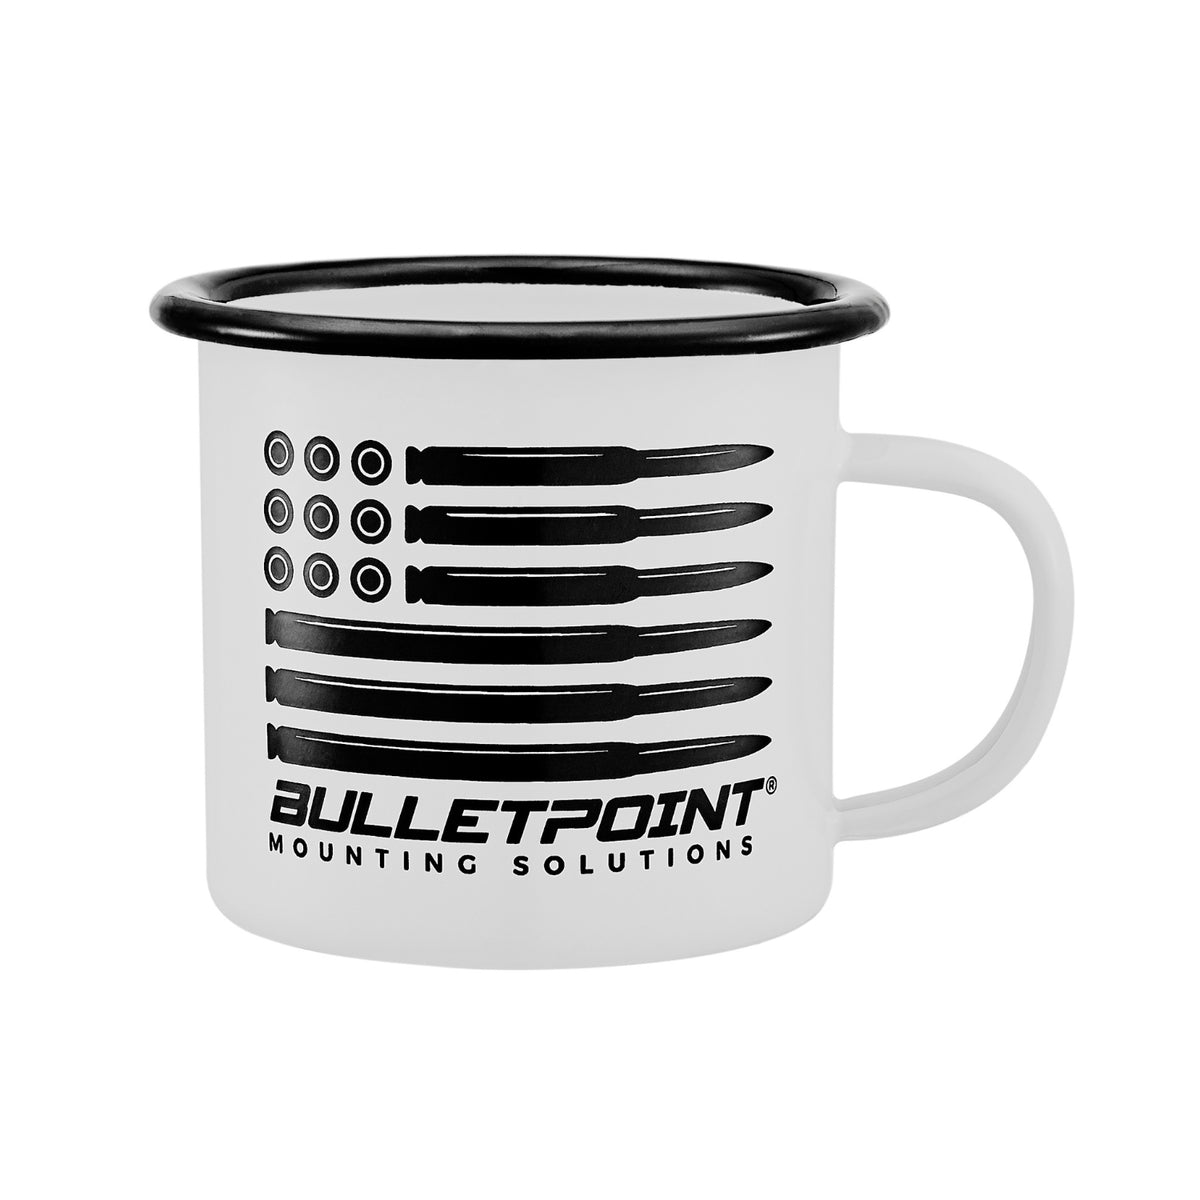 https://www.bulletpointmountingsolutions.com/cdn/shop/products/BulletpointMountingSolutionsCampingMug_1200x.jpg?v=1681331262